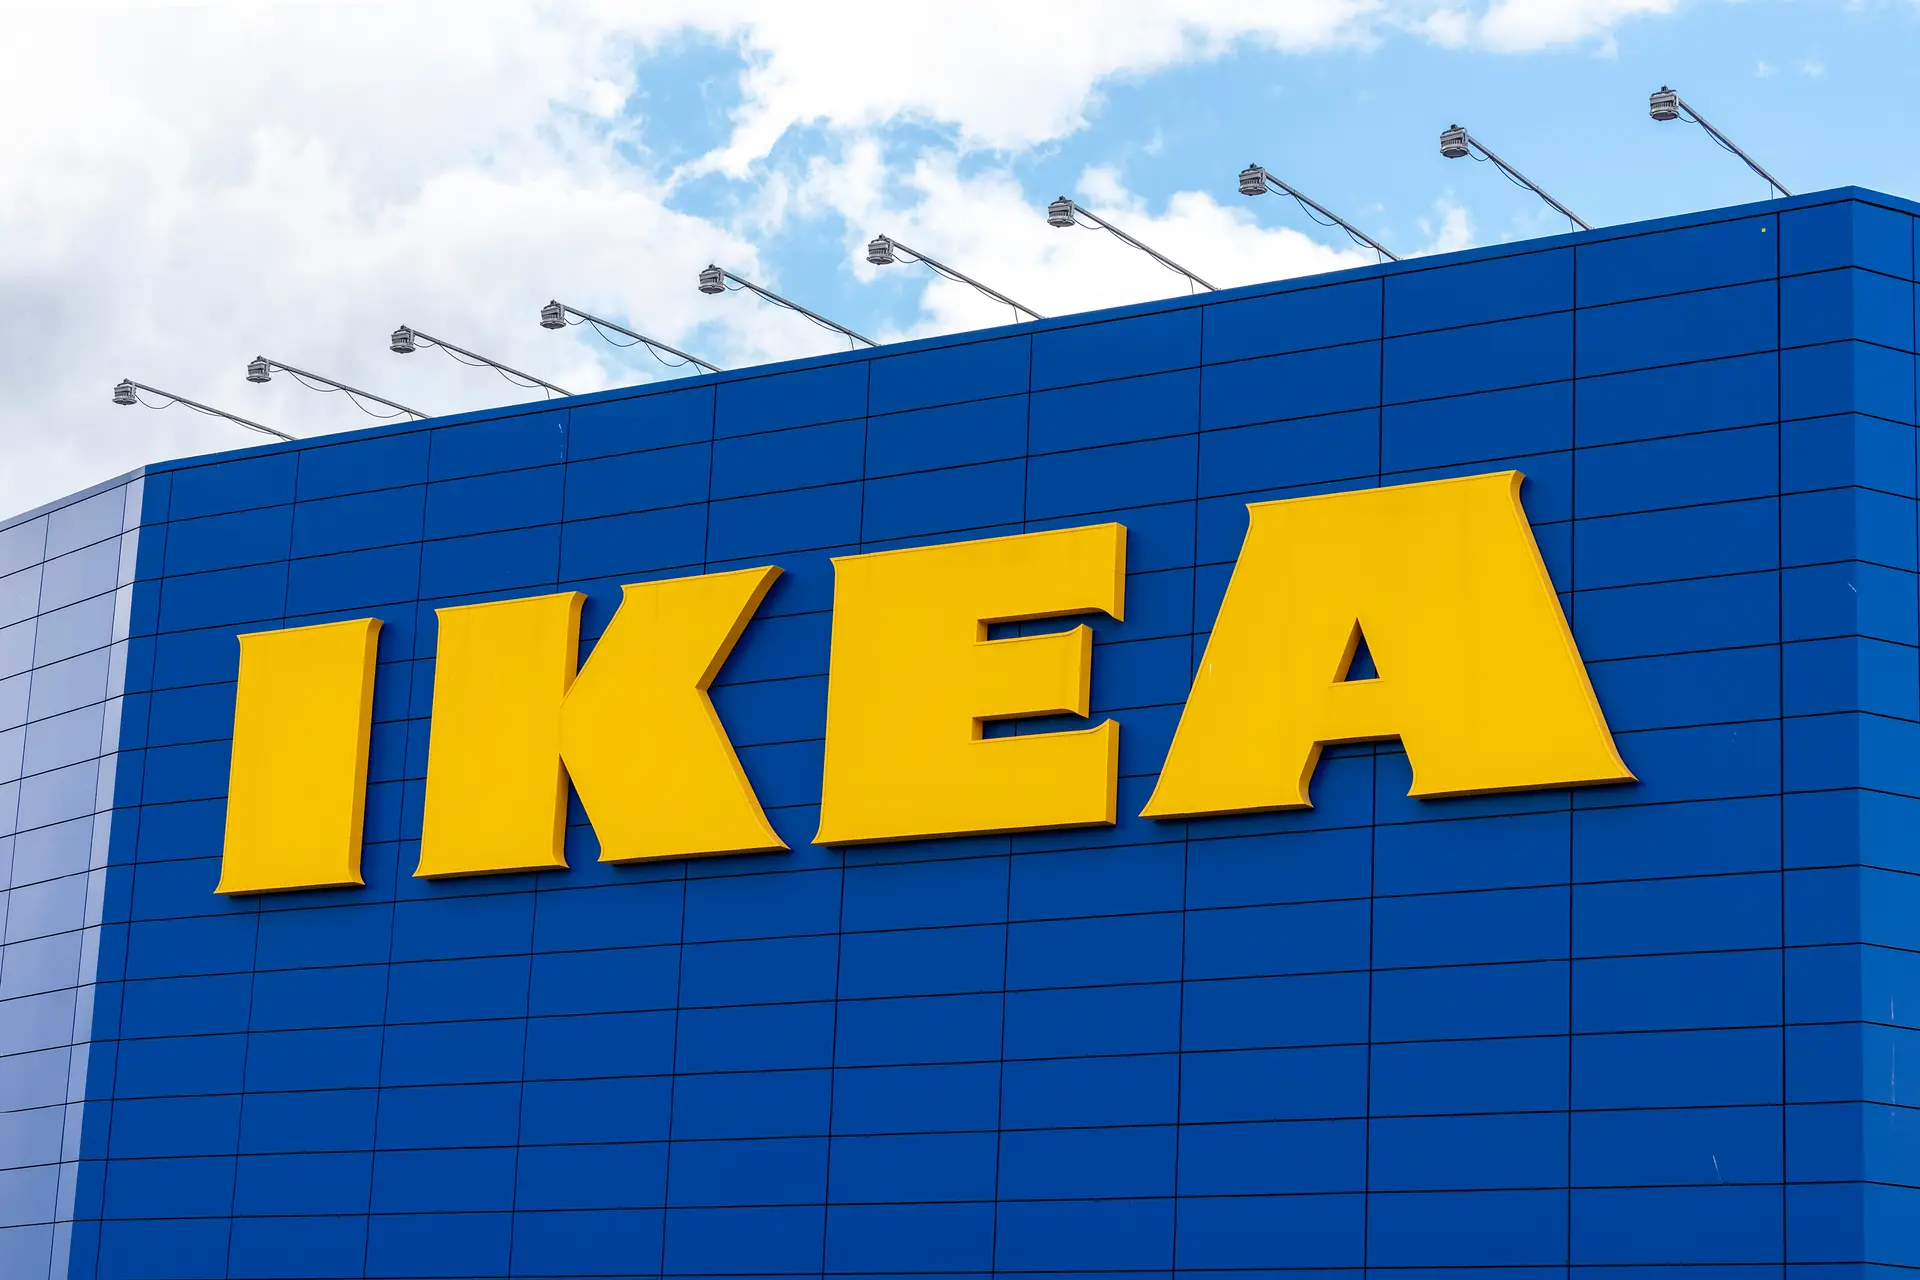 Oferta de artigos? Ikea avisa que é uma "campanha fraudulenta"